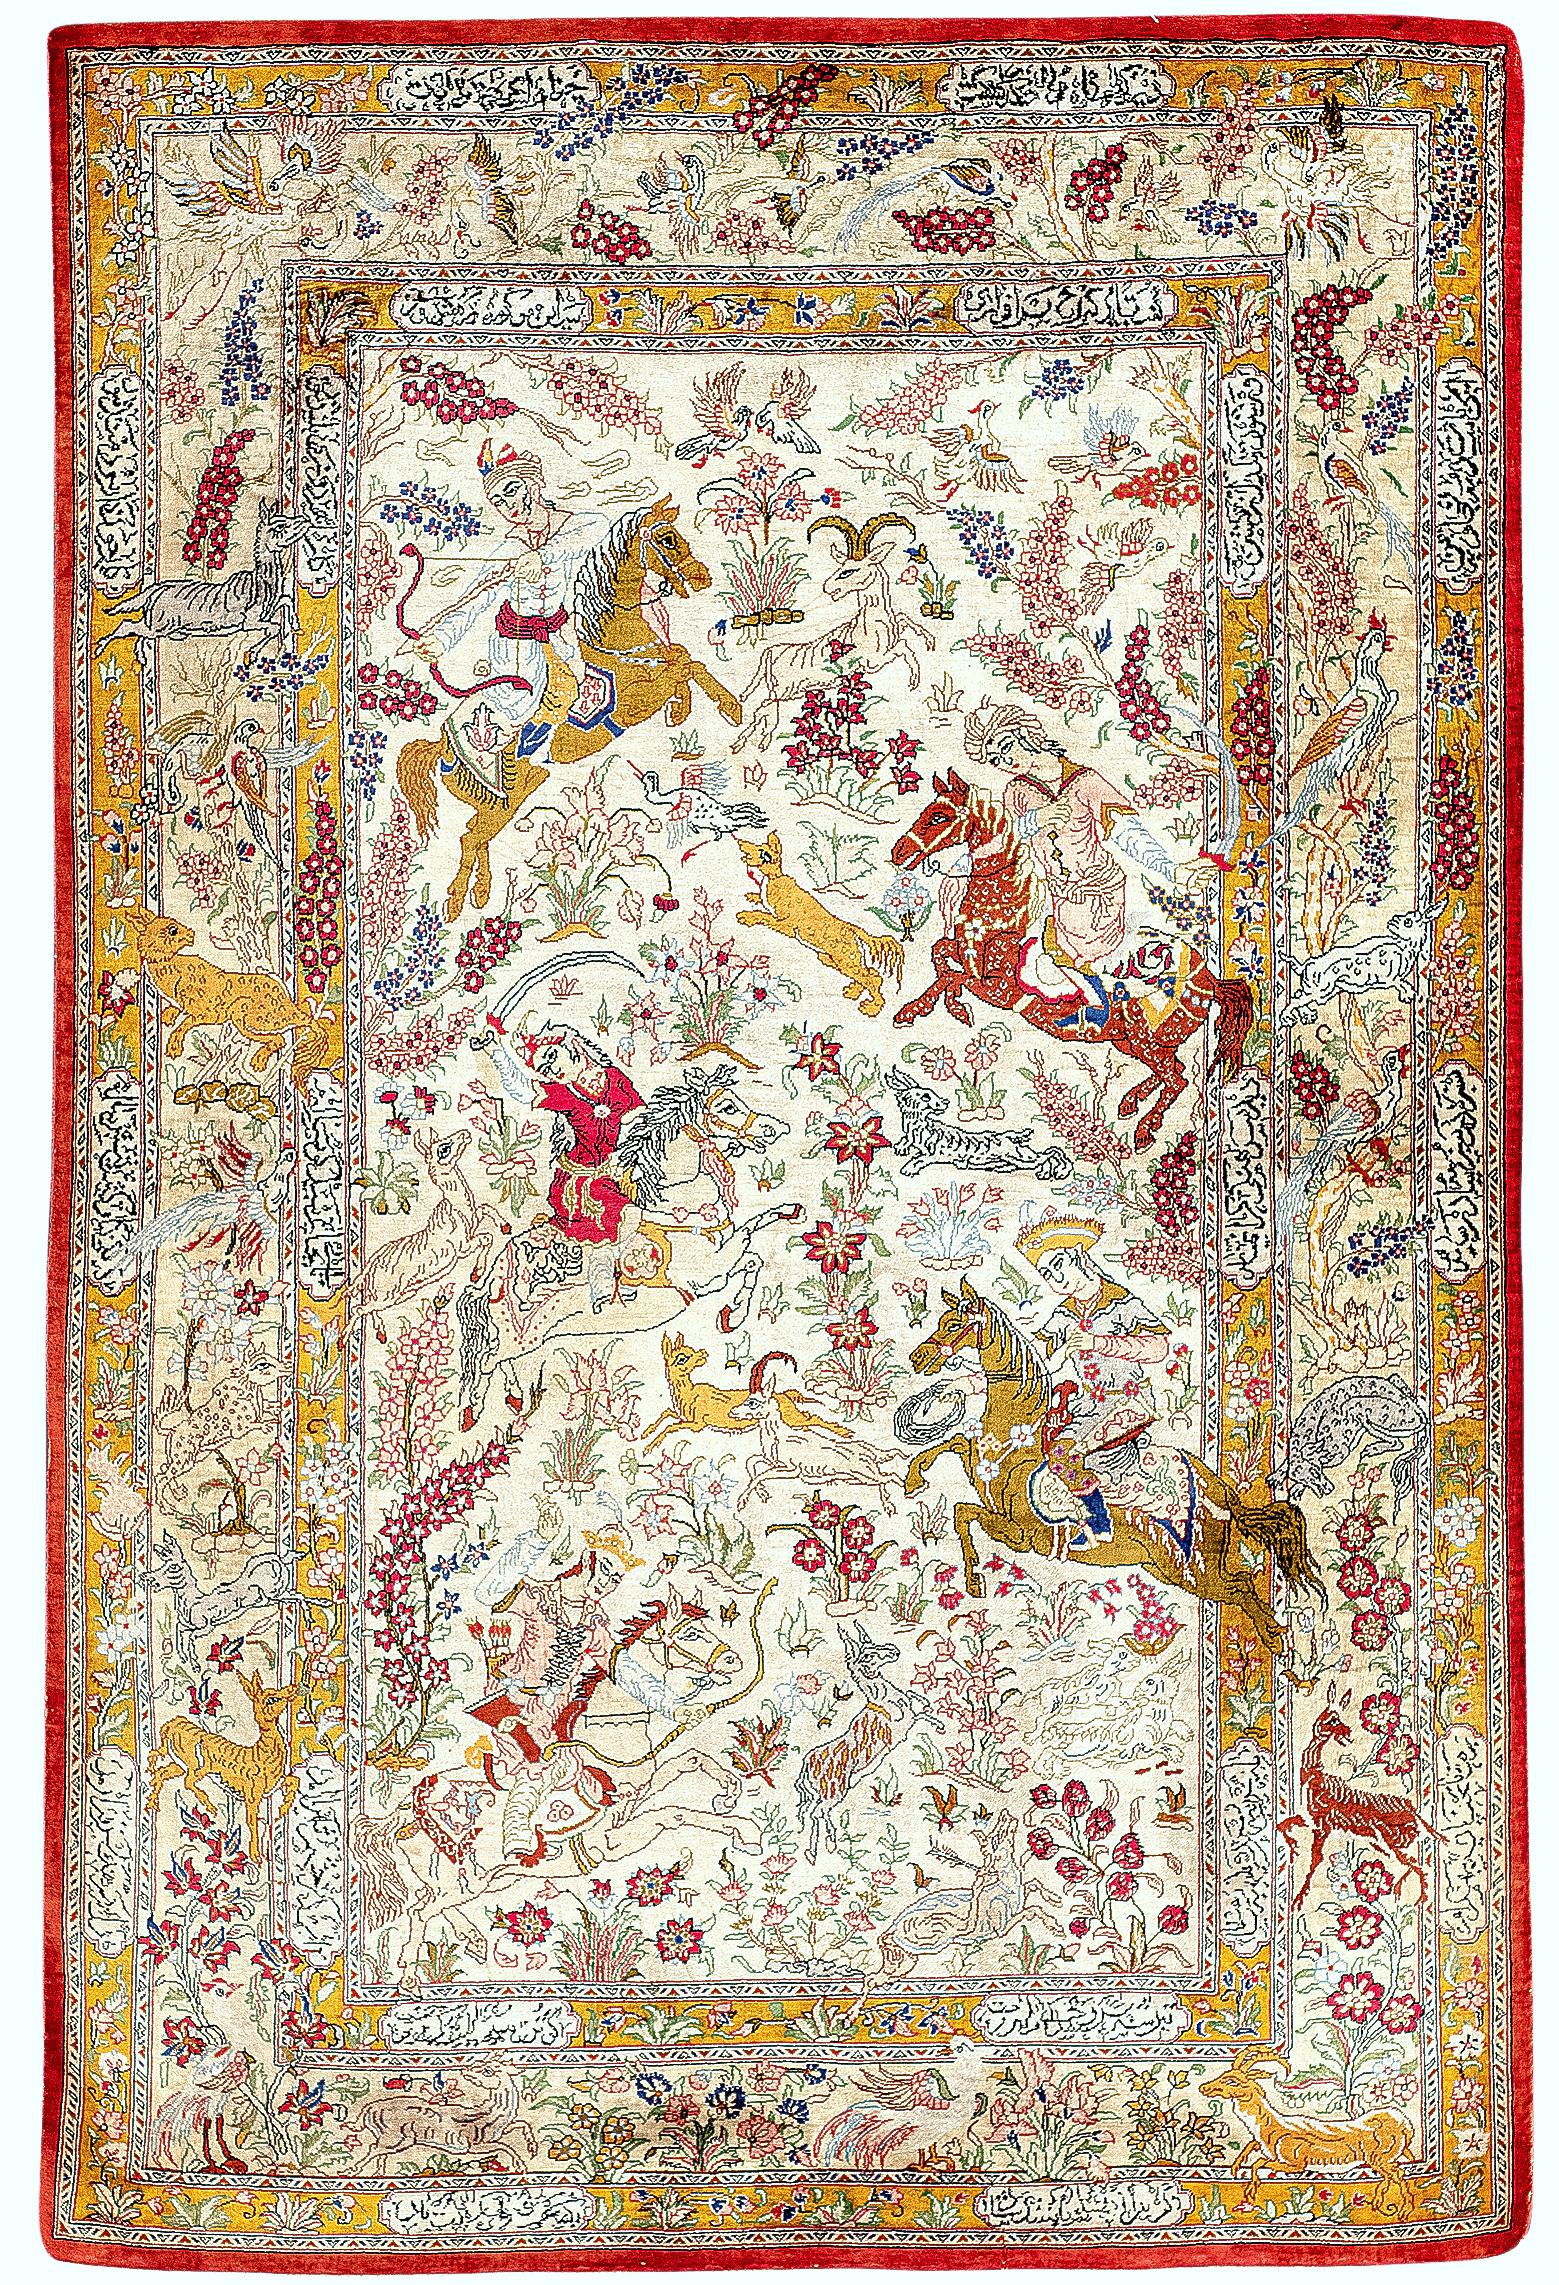 Soie Ghom - Nord-ouest de la Perse

Magnifique tapis de soie aux motifs de chasse d'un niveau artistique exceptionnel. Les tapis sur le thème de la chasse sont préférés pour la richesse de leurs détails. Ce Ghom représente les souverains de Perse en